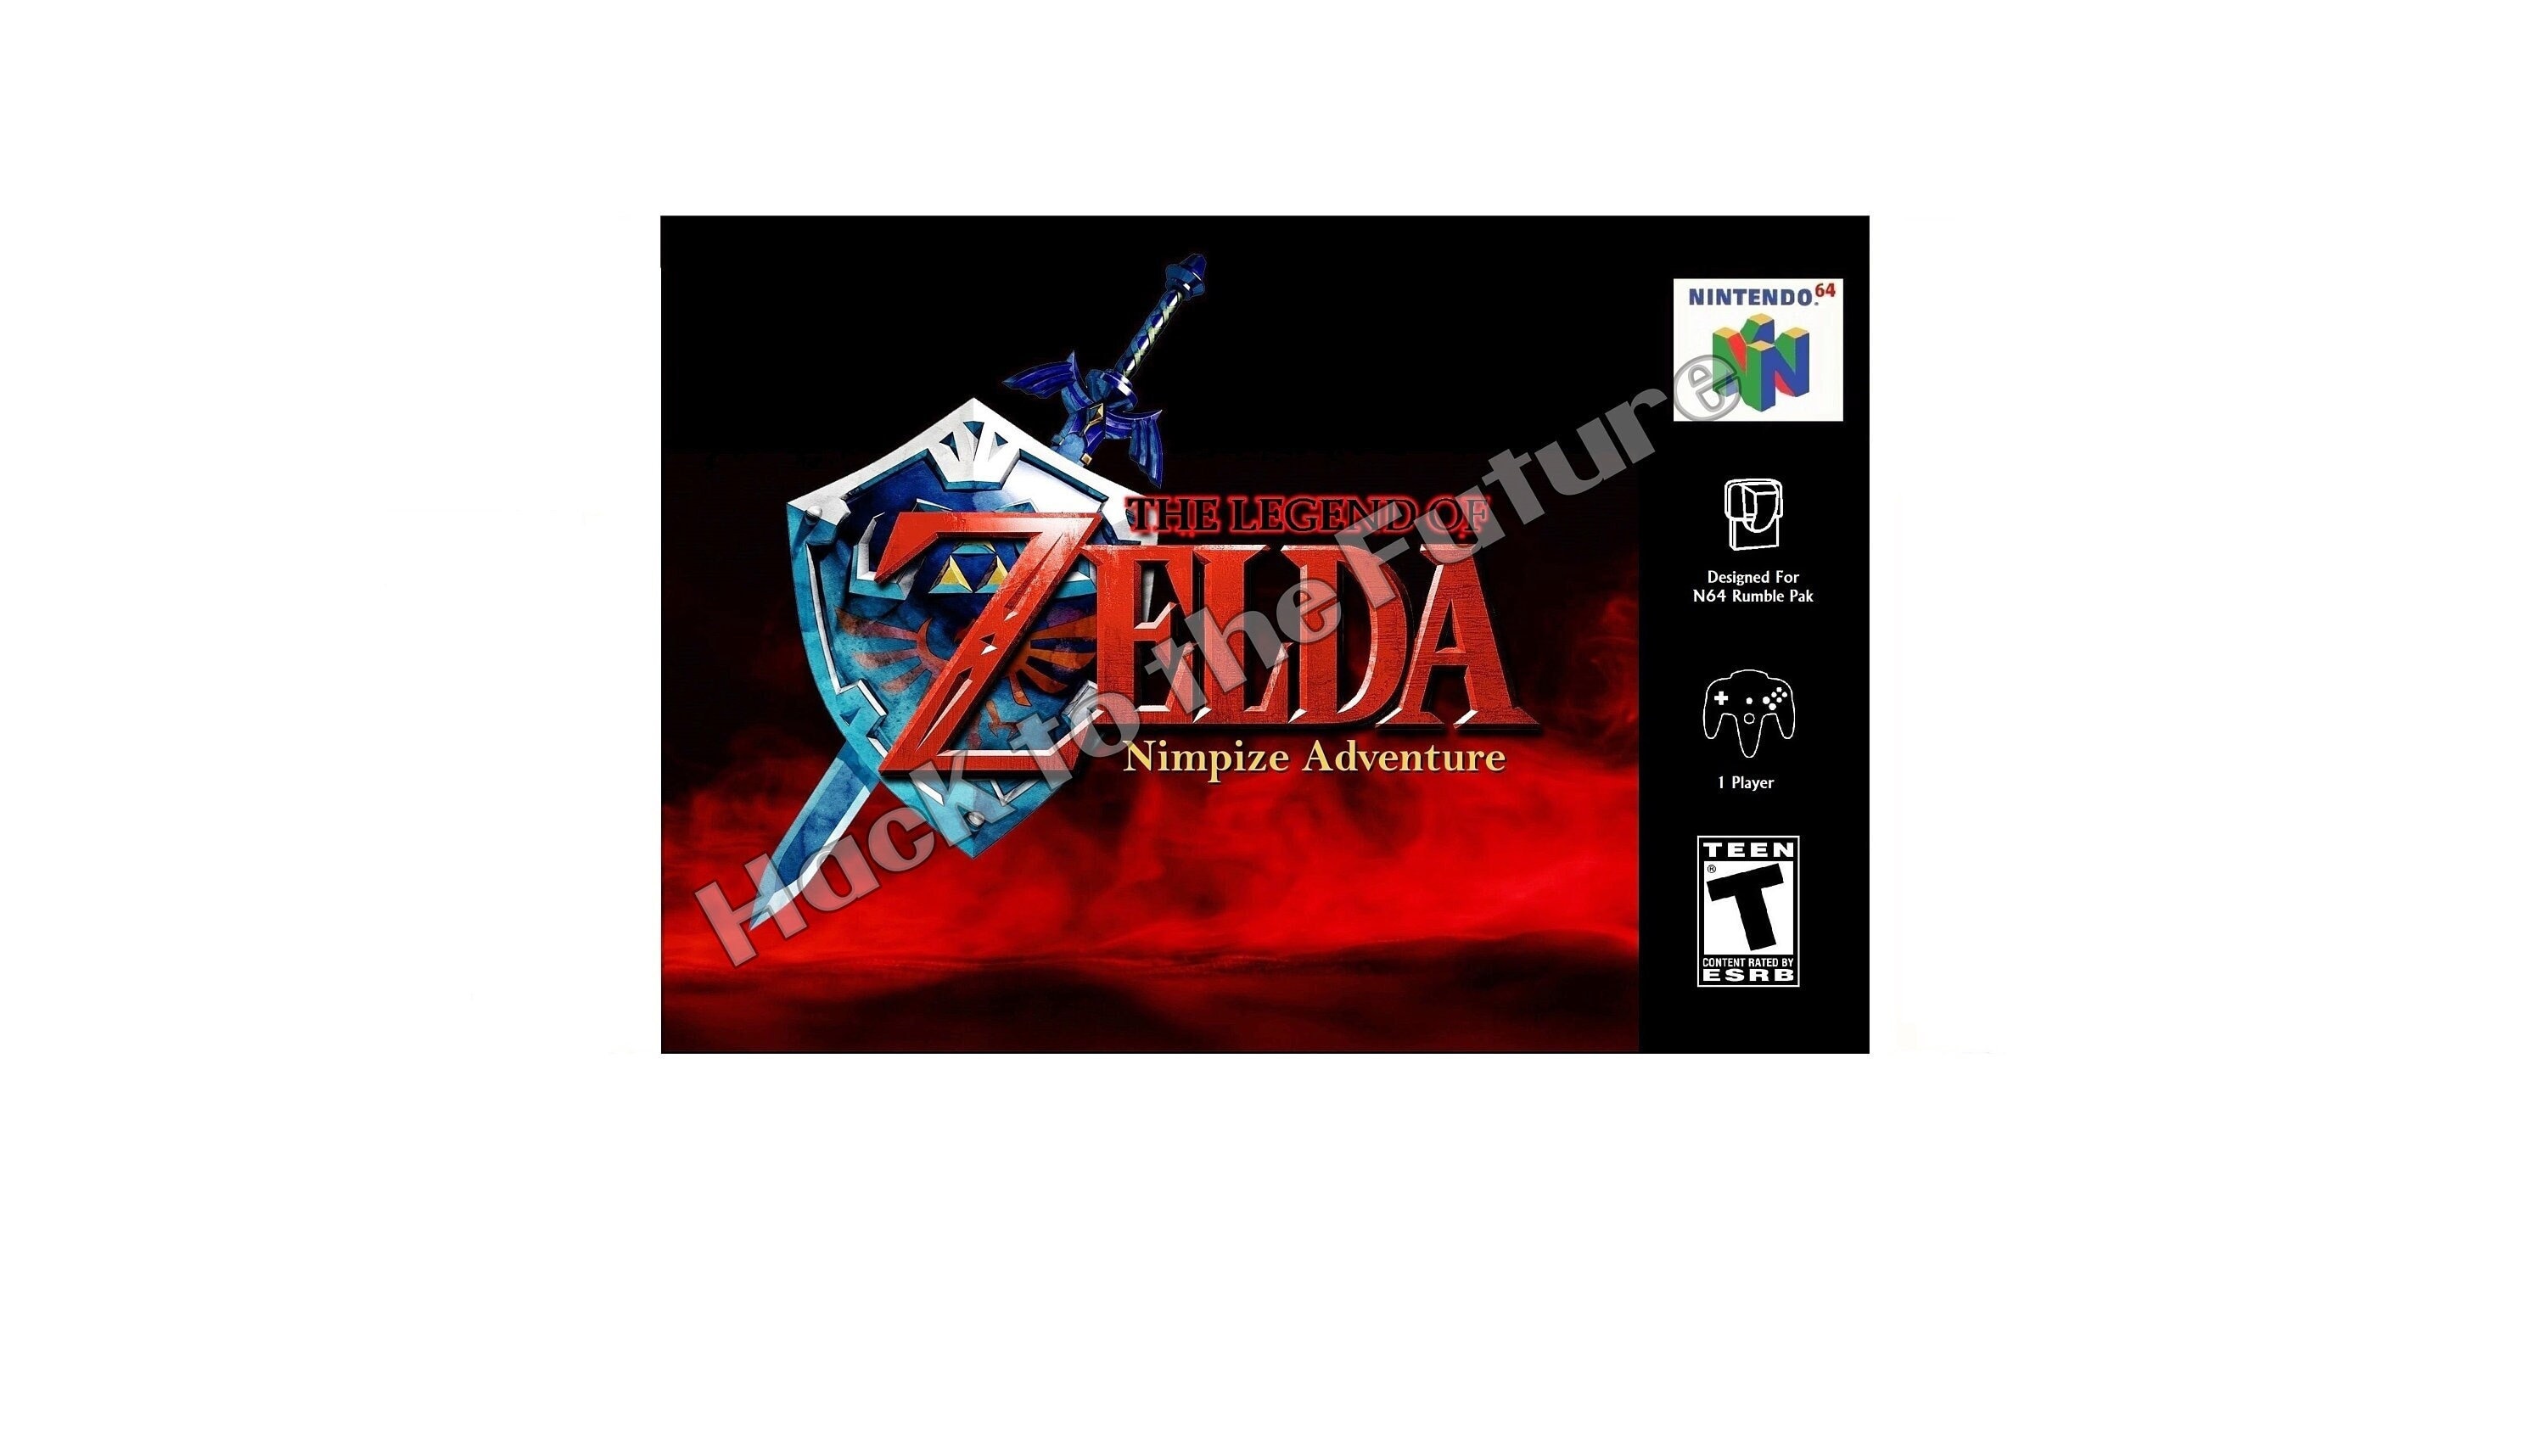 Zelda Ocarina of Time -PC Port- Render98 Remake -Link's Model- 